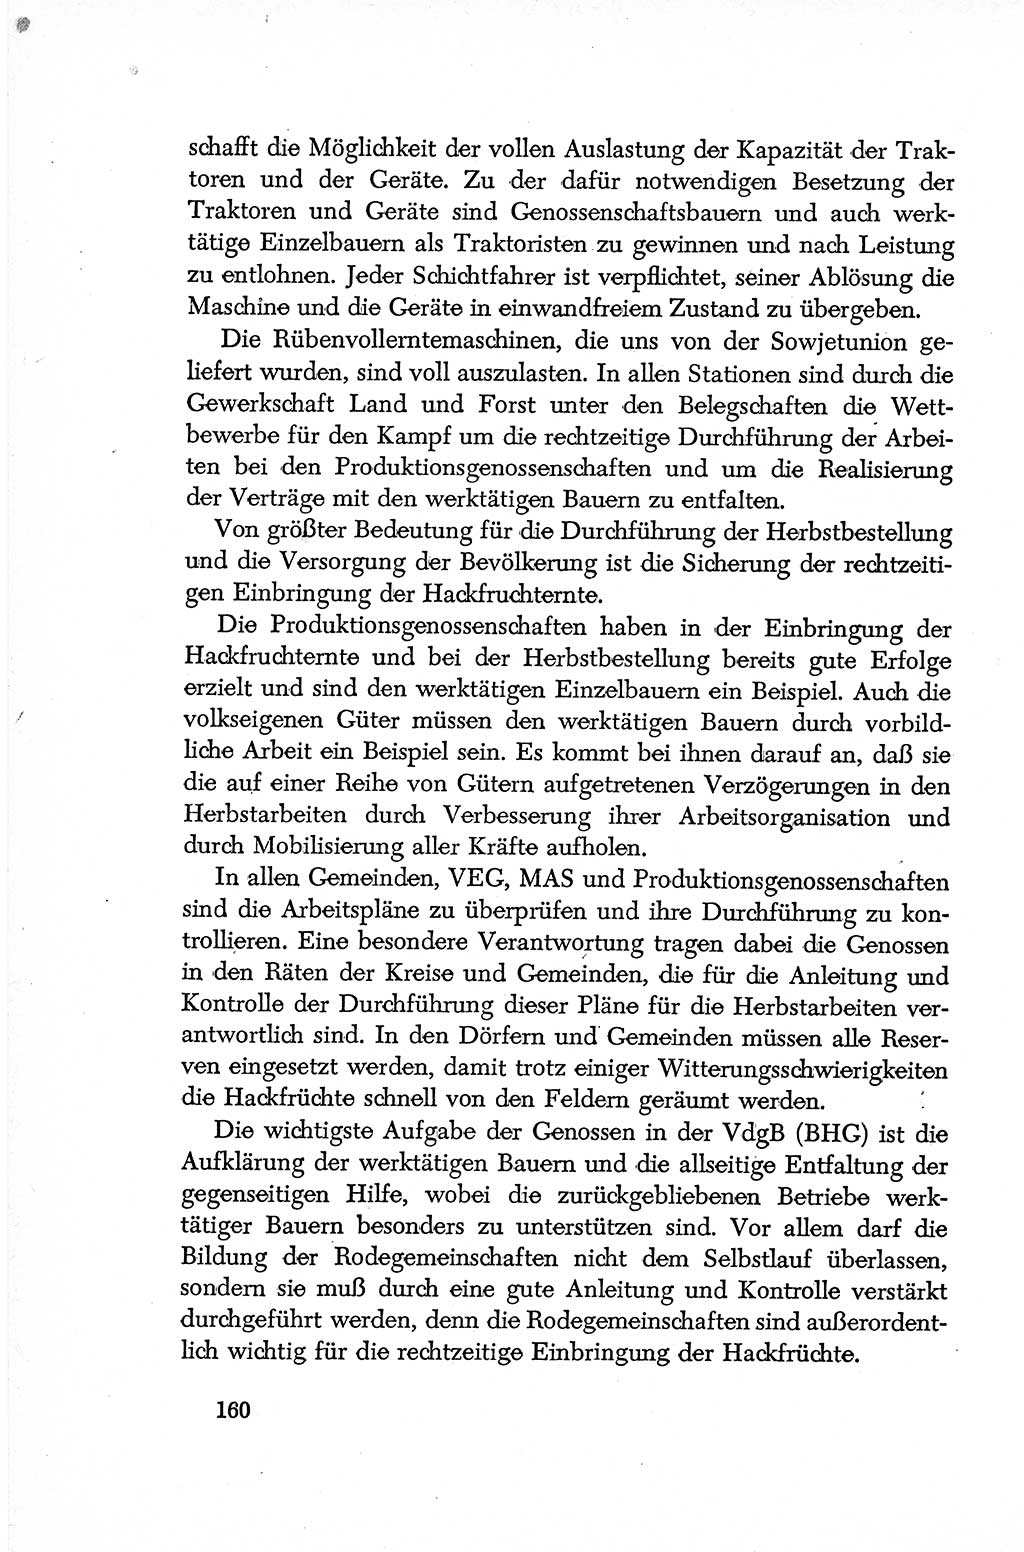 Dokumente der Sozialistischen Einheitspartei Deutschlands (SED) [Deutsche Demokratische Republik (DDR)] 1952-1953, Seite 160 (Dok. SED DDR 1952-1953, S. 160)